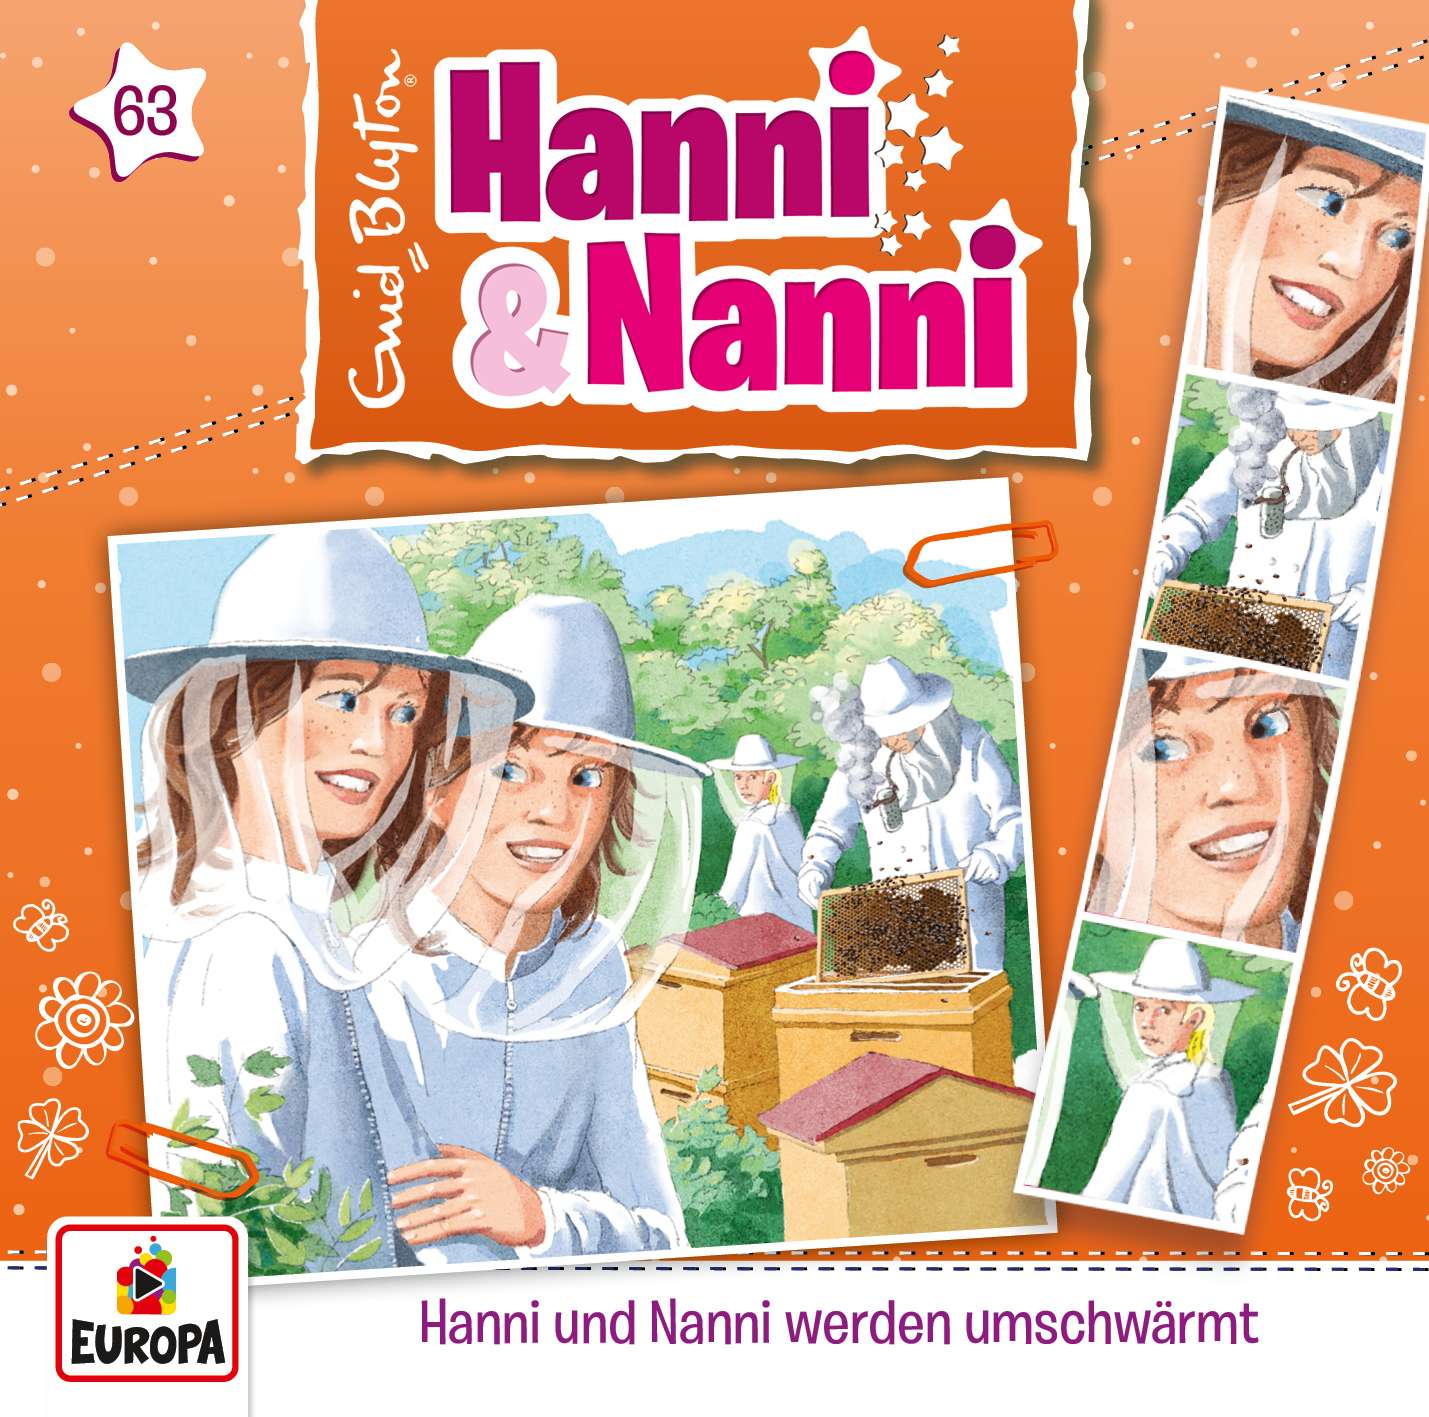 Hanni und Nanni - Hanni & Nanni werden umschwärmt